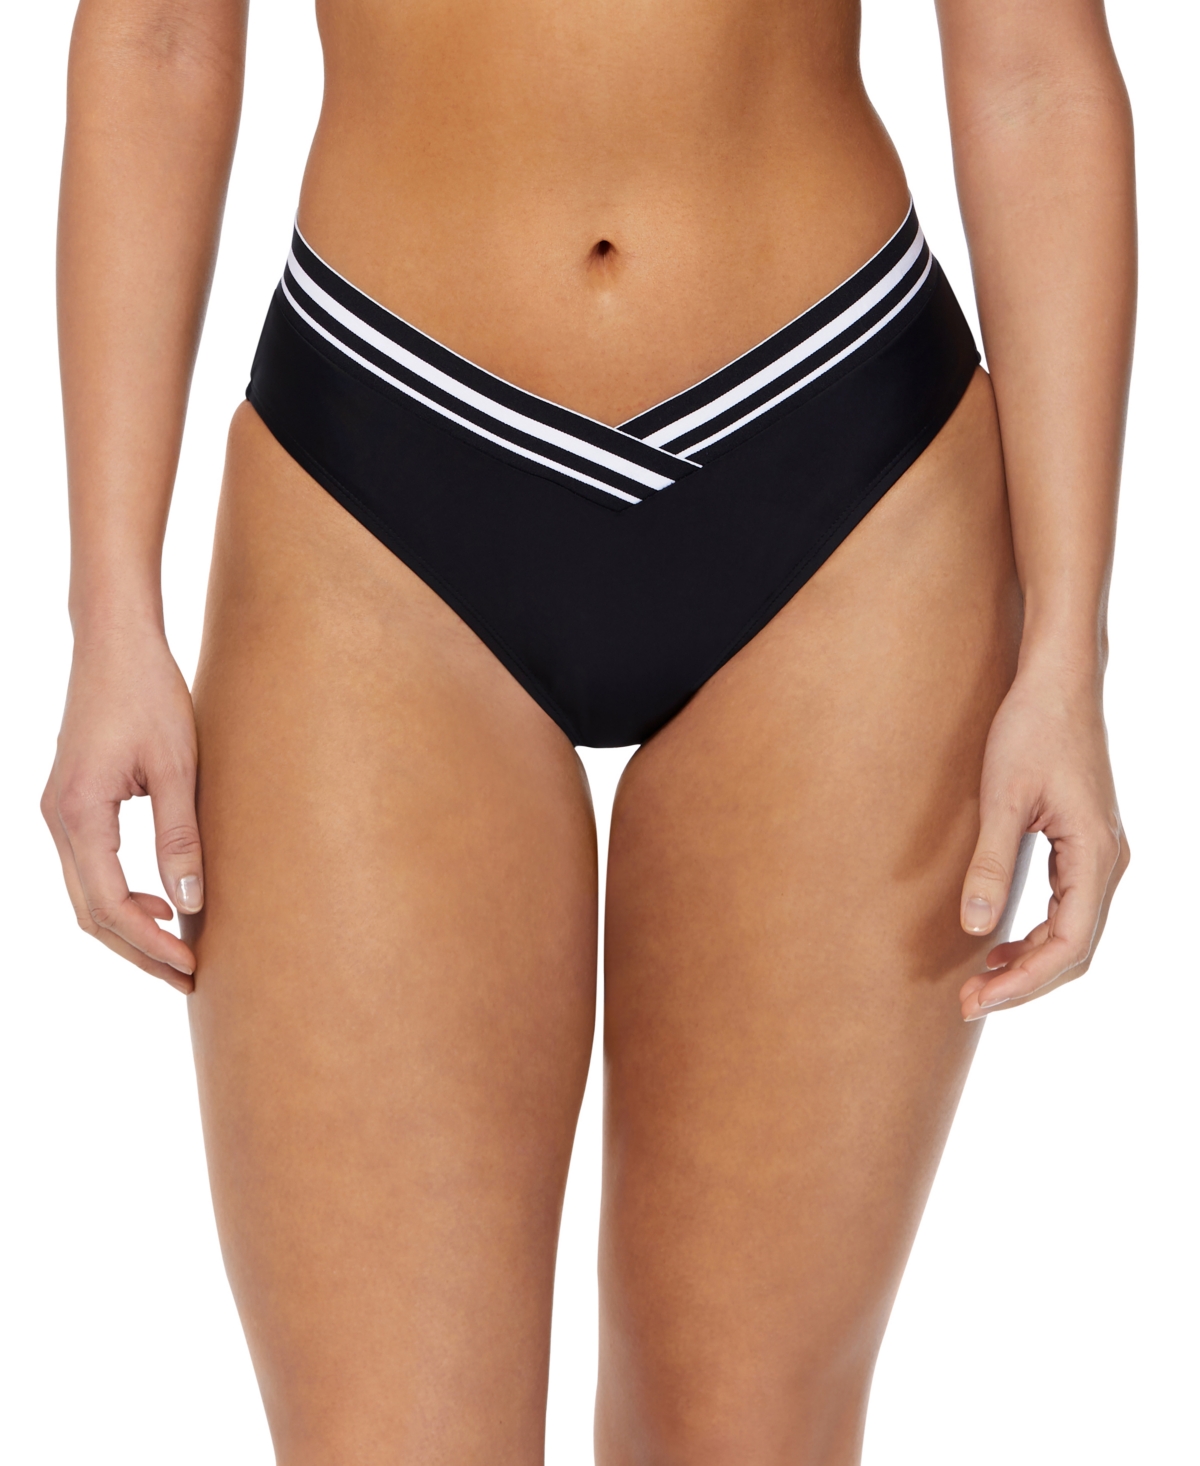 Women's Striped-Trim V-Waist Bikini Bottoms - Black